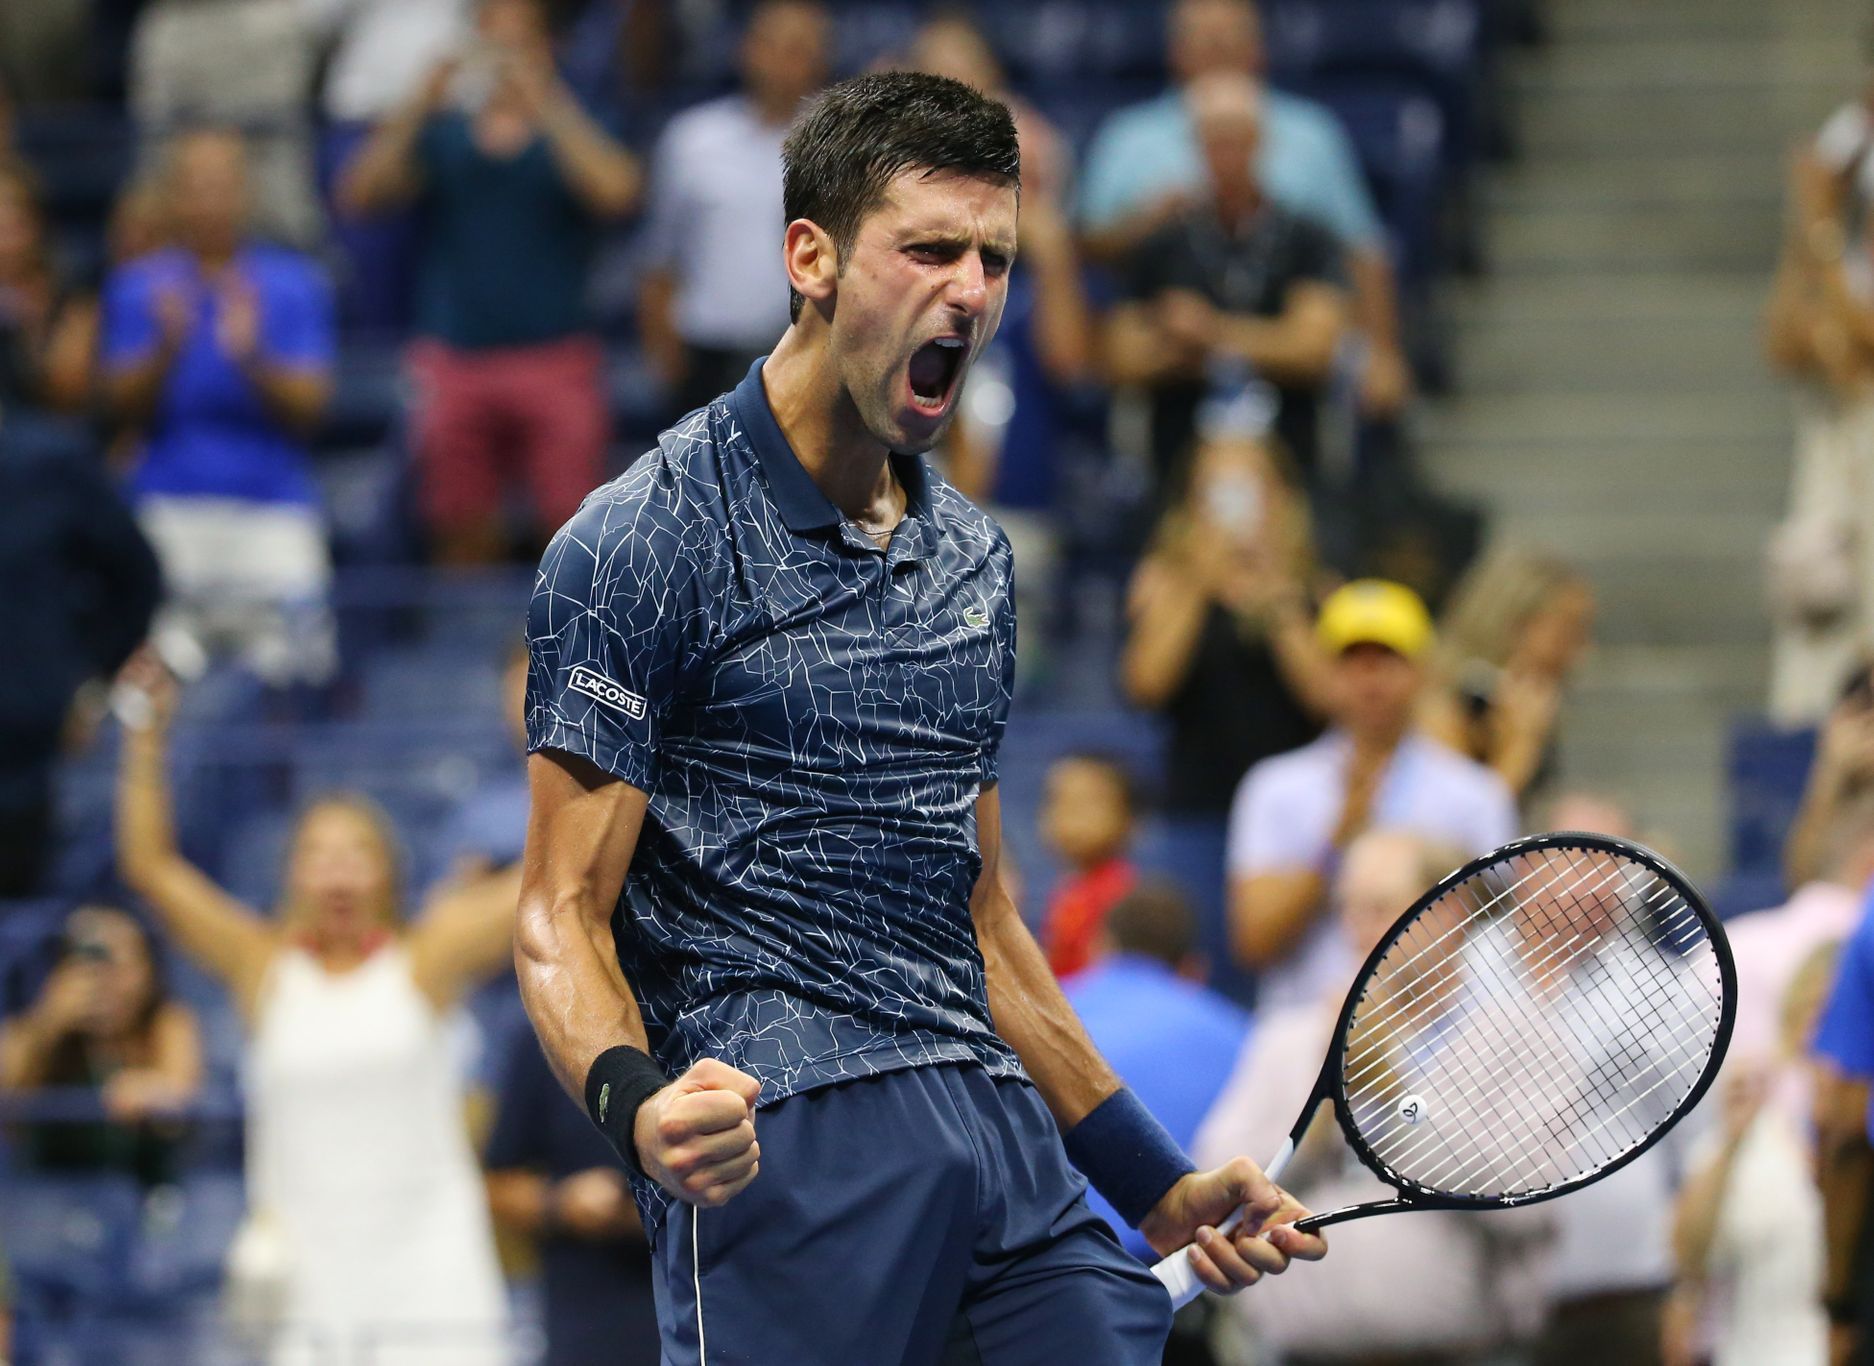 tenis, US Open 2018, Novak Djokovič po výhře ve čtvrtfinále